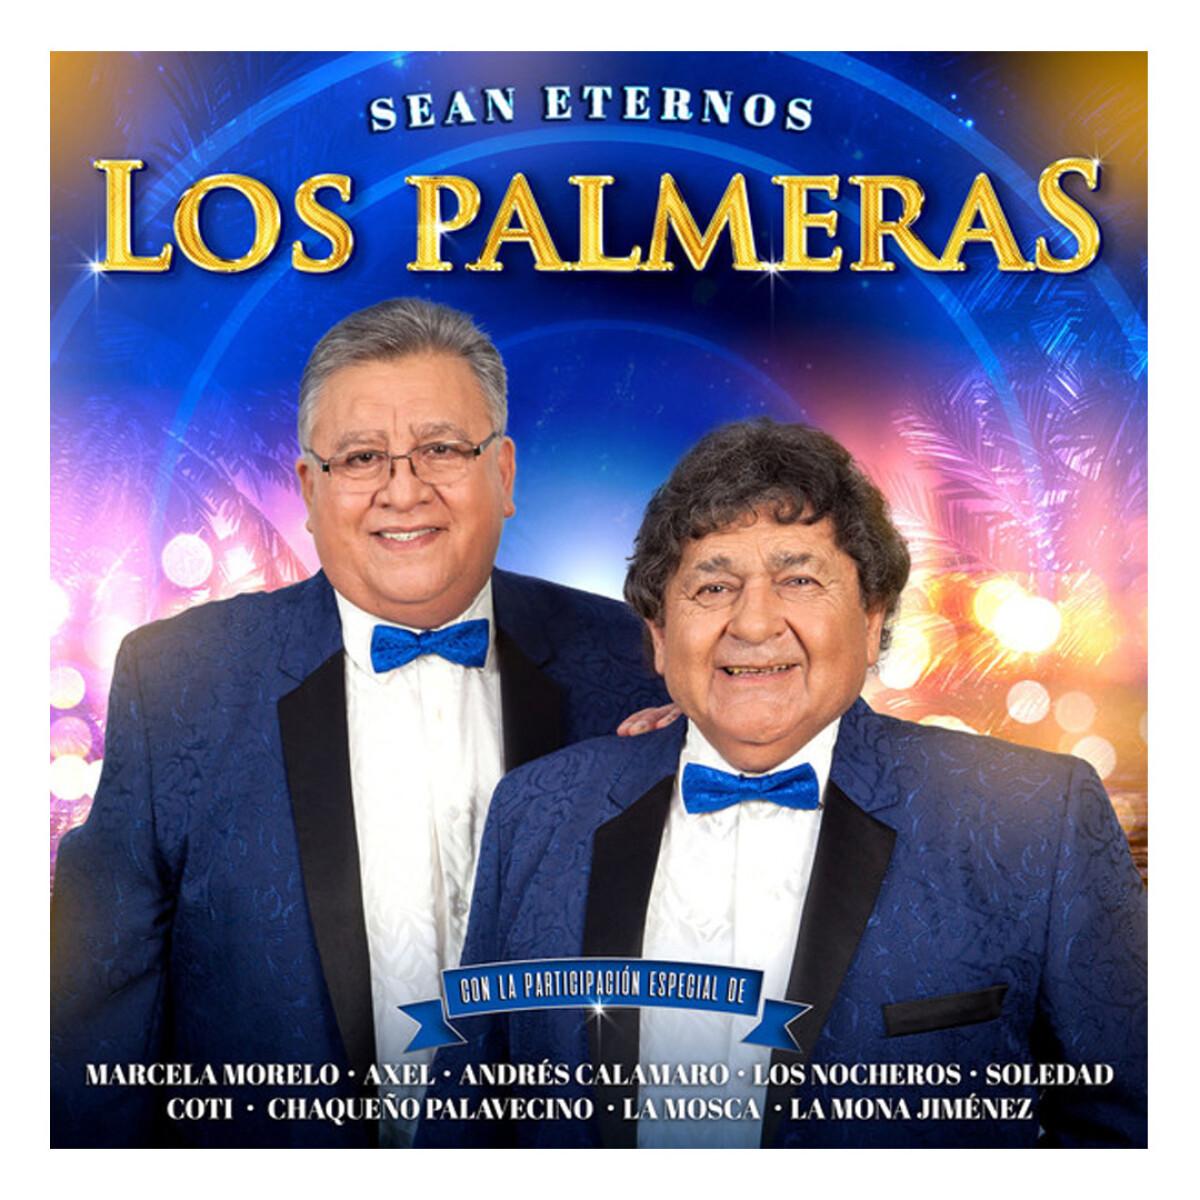 Los Palmeras - Sean Eternos Los Palmeras - Vinilo 